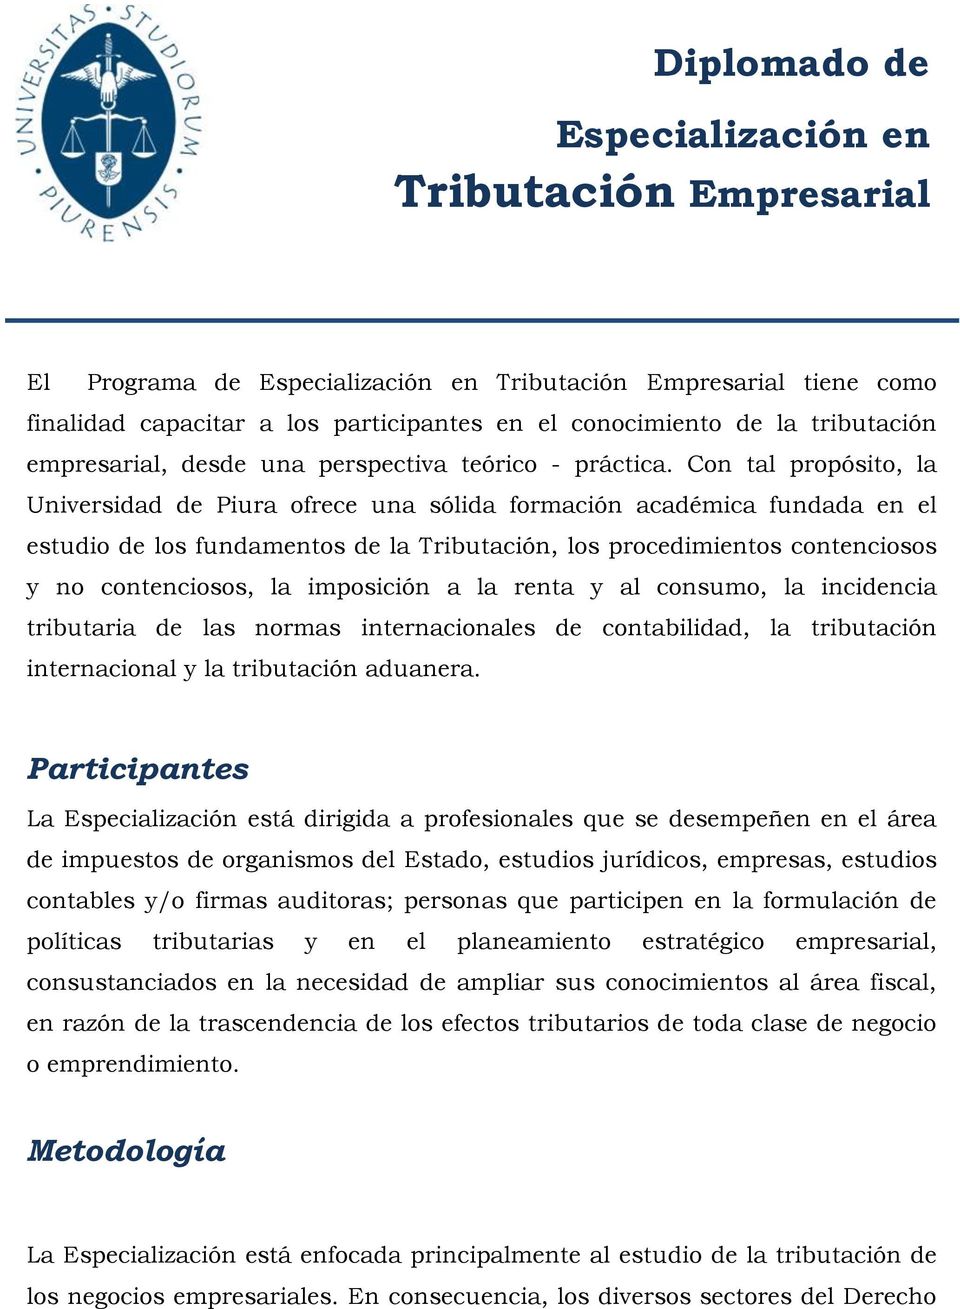 Con tal propósito, la Universidad de Piura ofrece una sólida formación académica fundada en el estudio de los fundamentos de la Tributación, los procedimientos contenciosos y no contenciosos, la